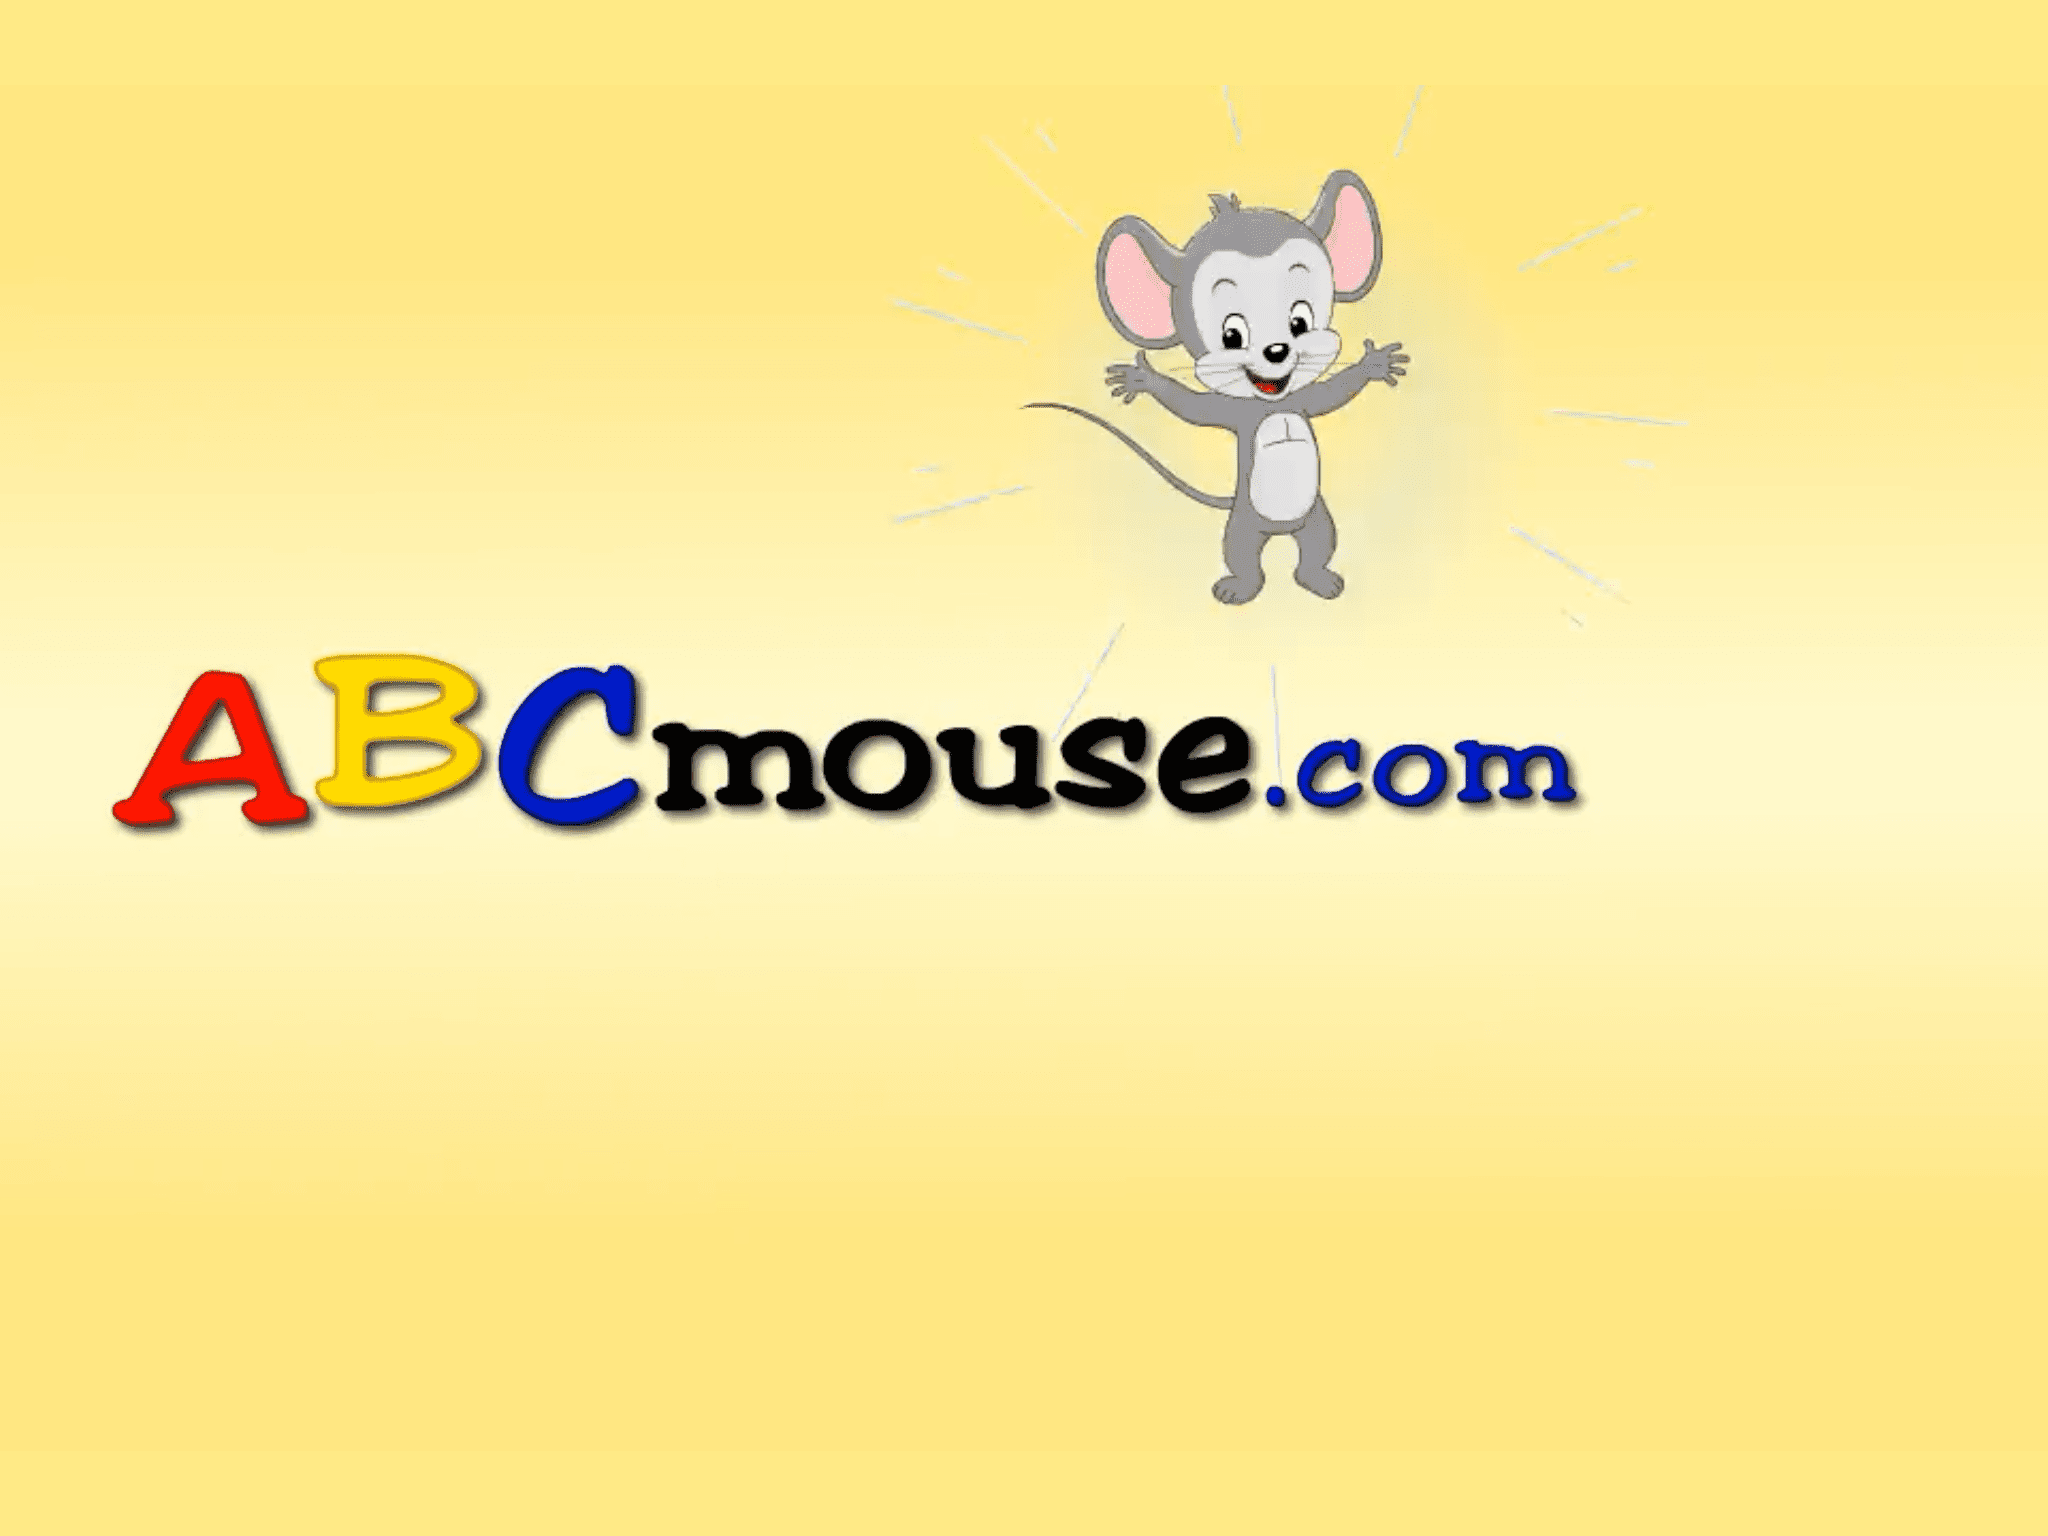 Geïllustreerde muis naast abcmouse.com